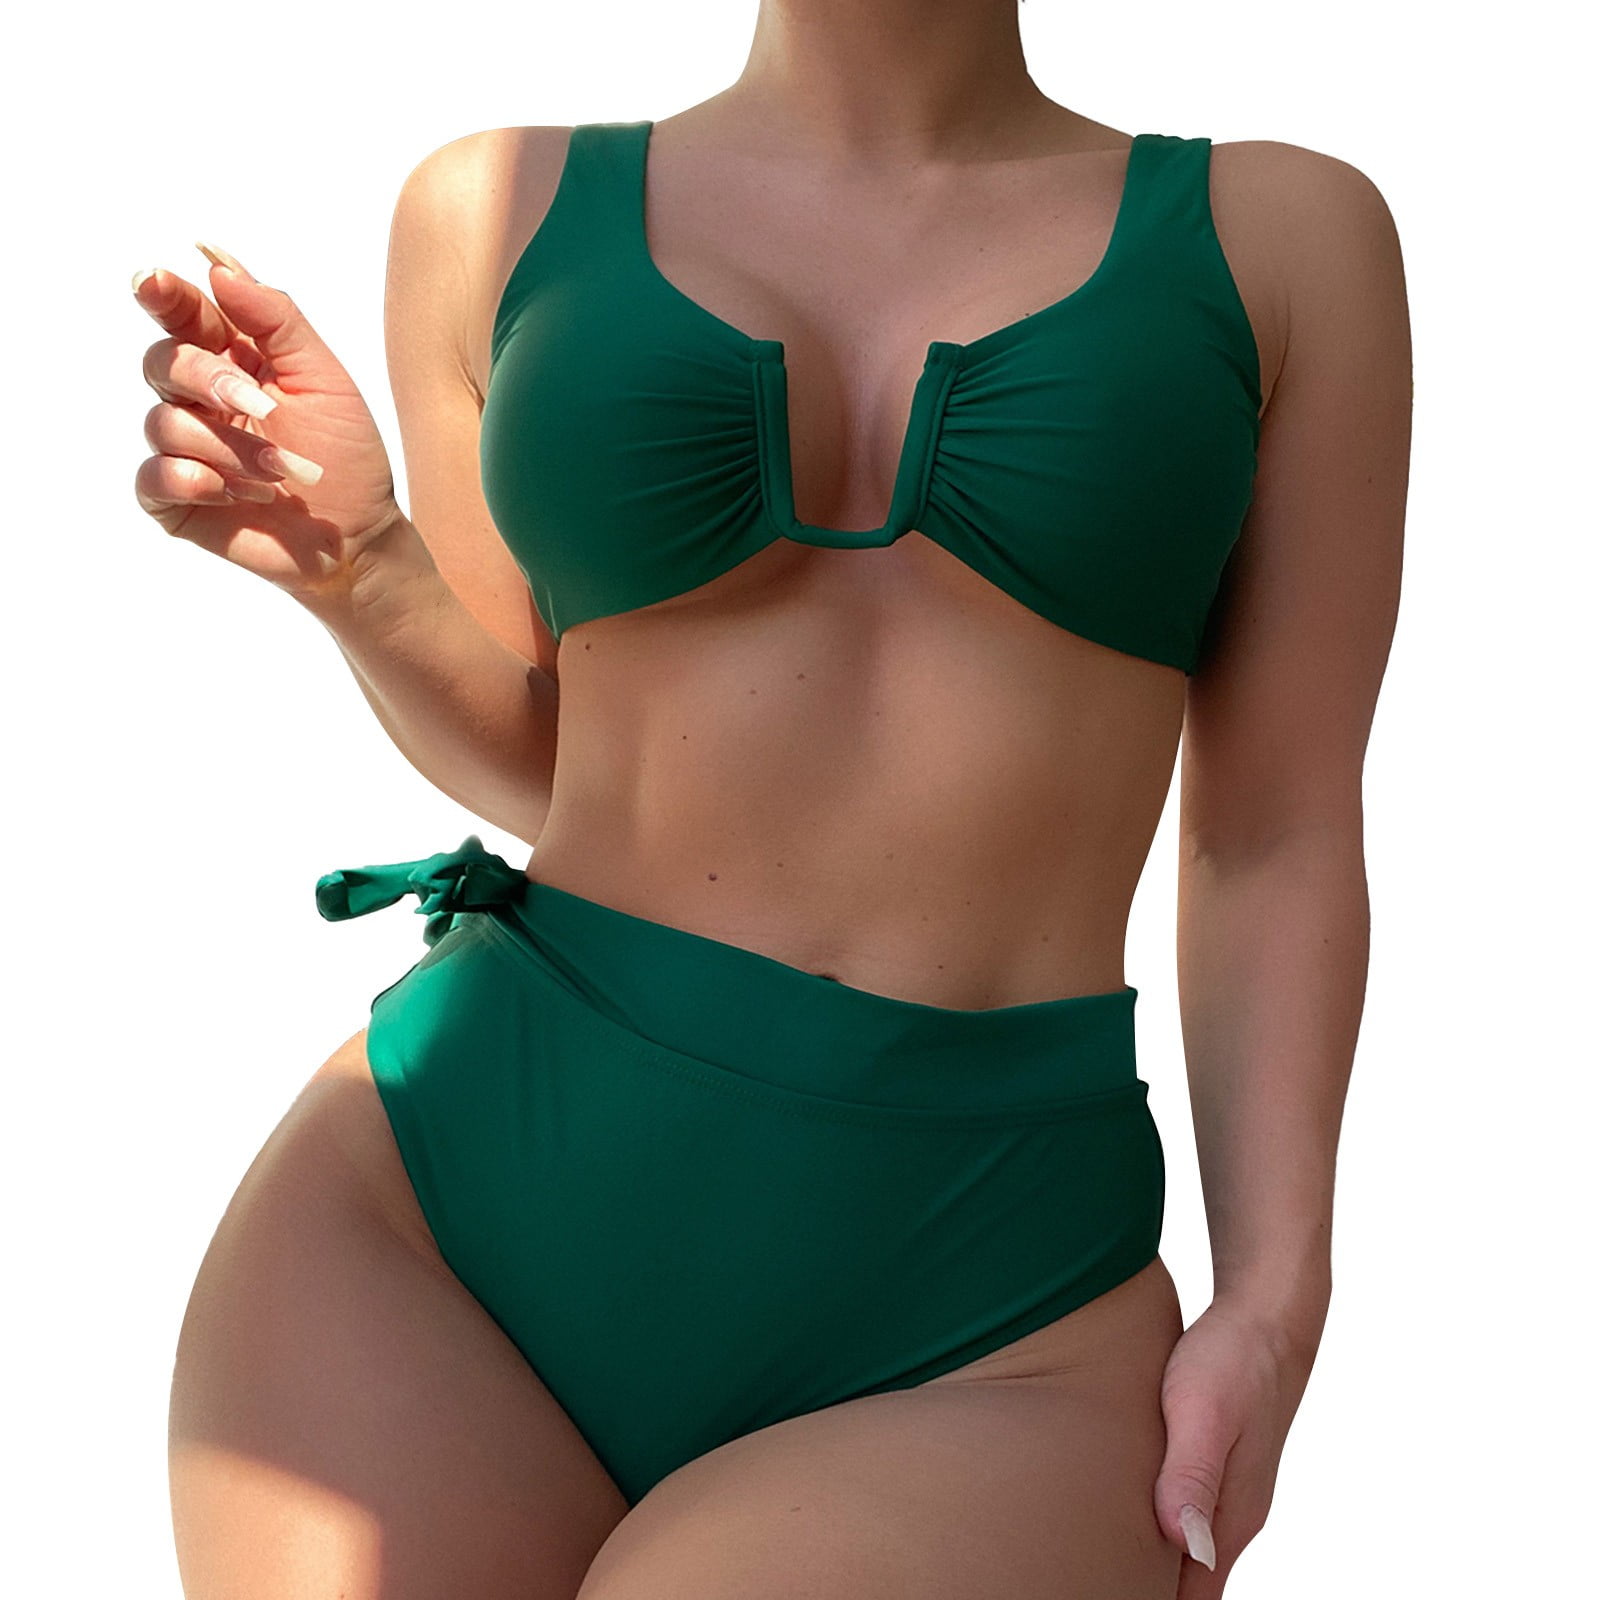 Bikini Sets for Women Bathing Suit Swimsuit Plain 2 Piece High Cut